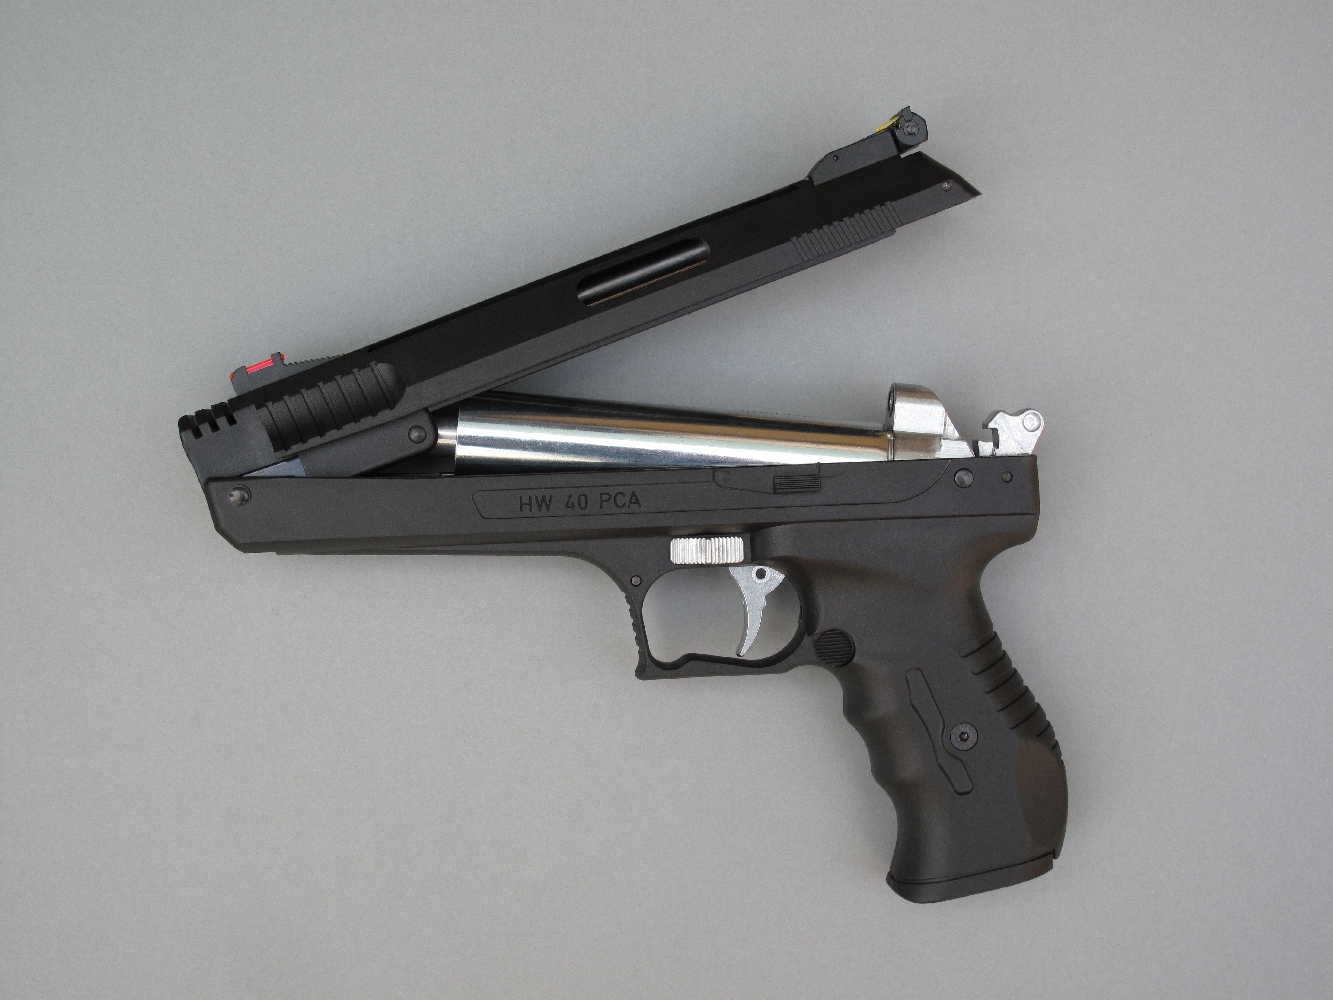 Ce pistolet fonctionne au moyen d’une pompe pneumatique, l’air étant comprimé au moment de la fermeture de son canon basculant.